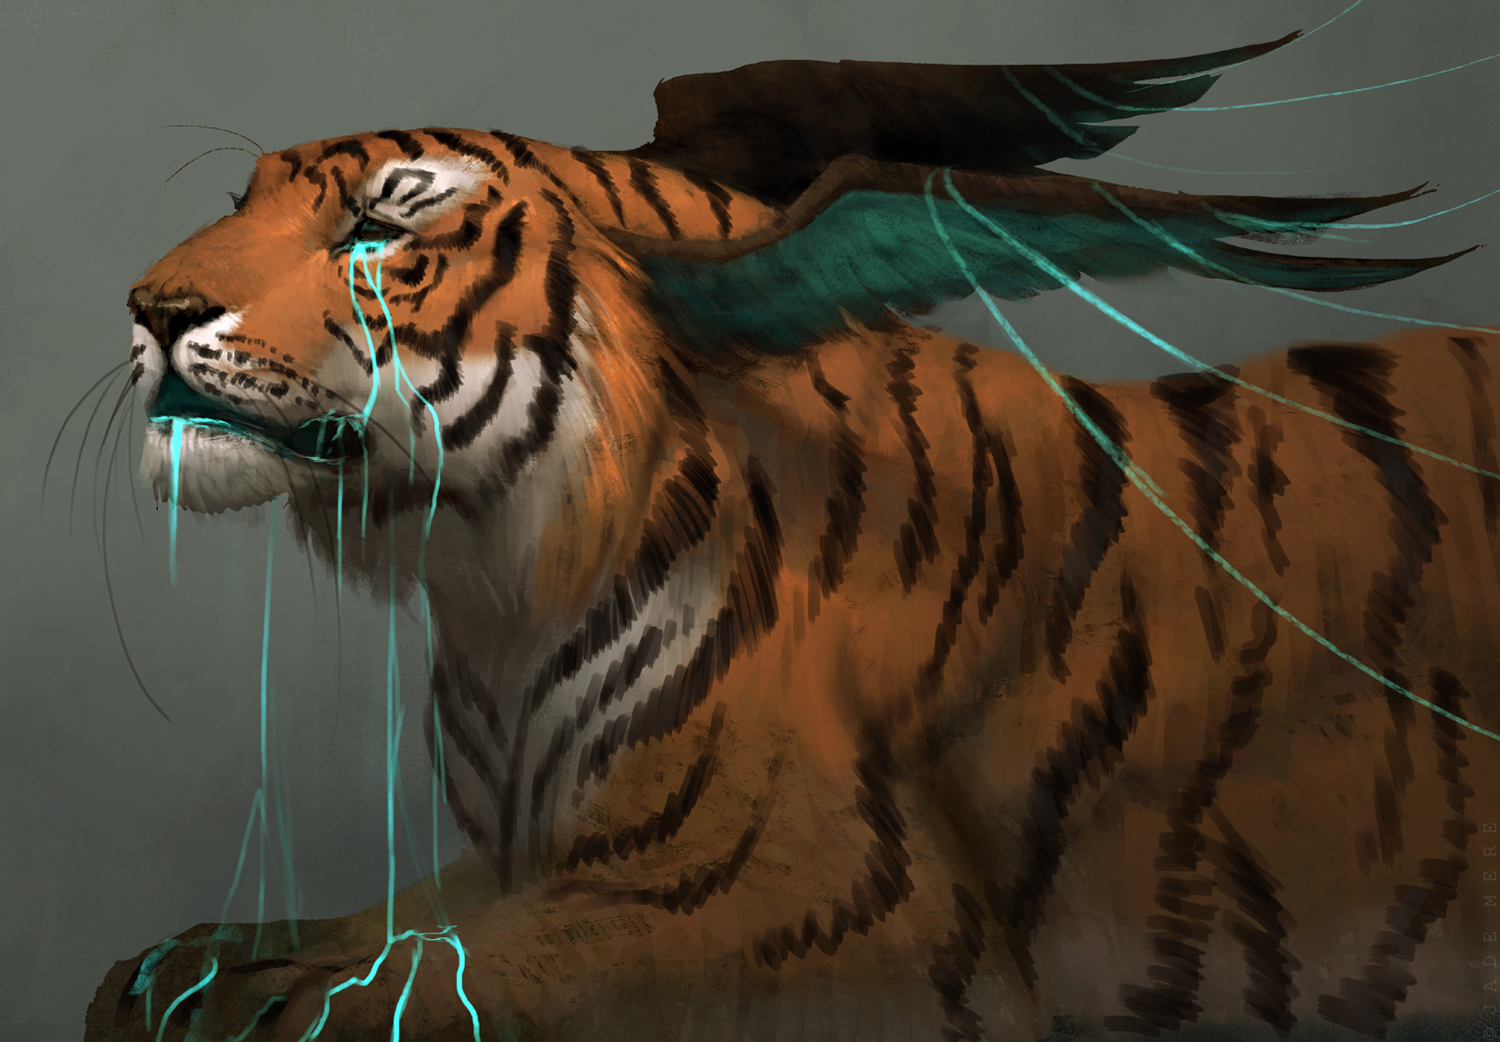 Jade Mere - weeping tiger